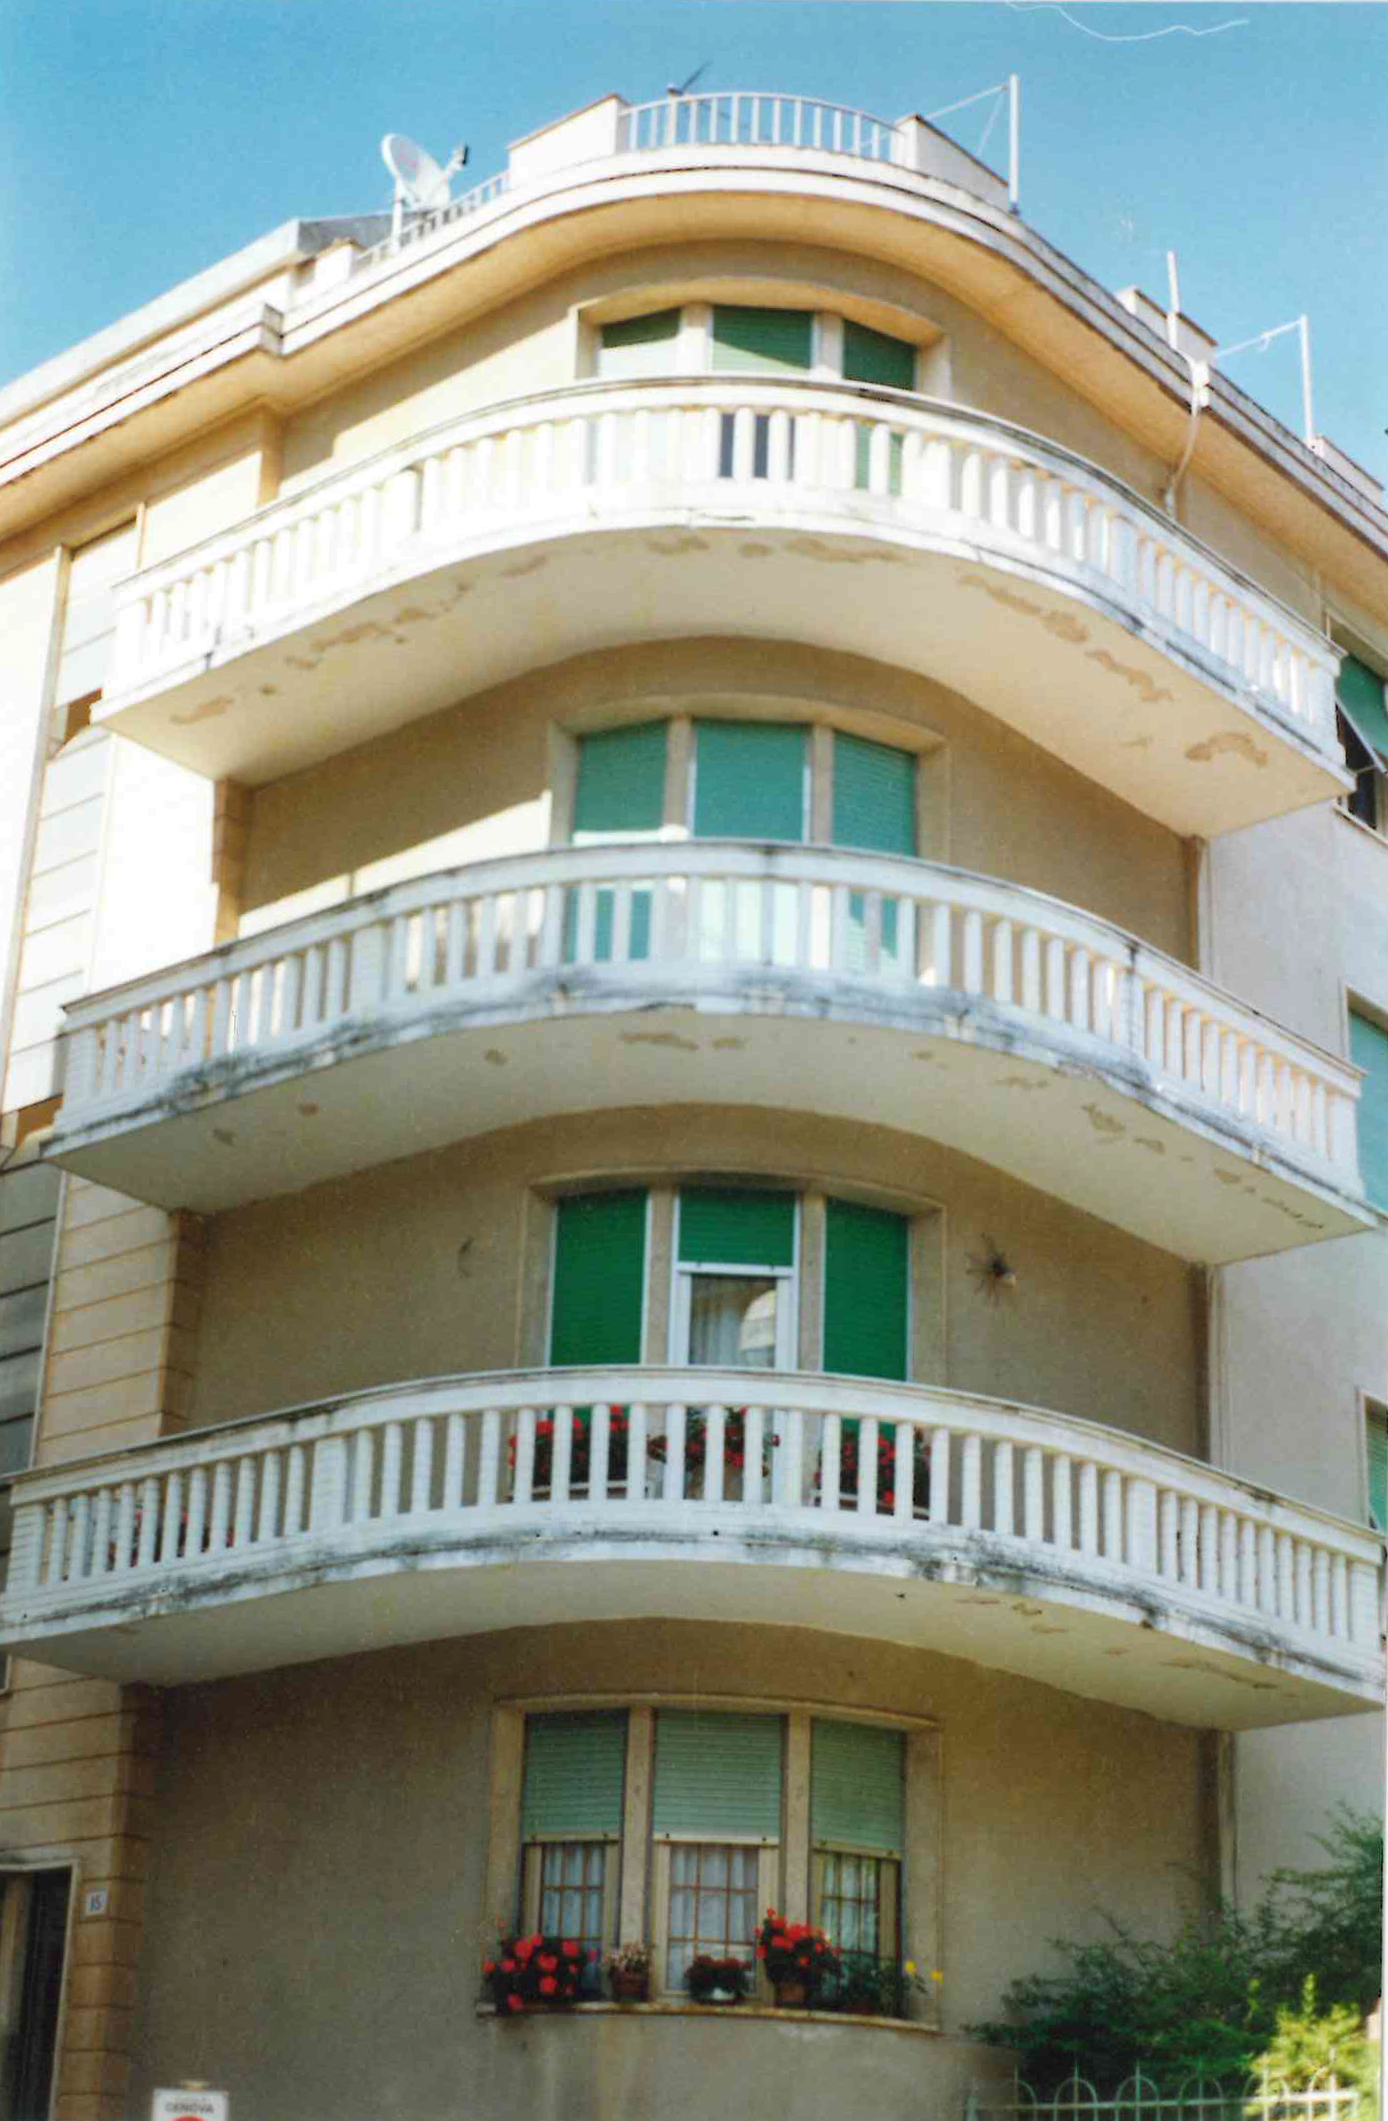 residenza condominiale (casa, privata) - Genova (GE)  (XX)